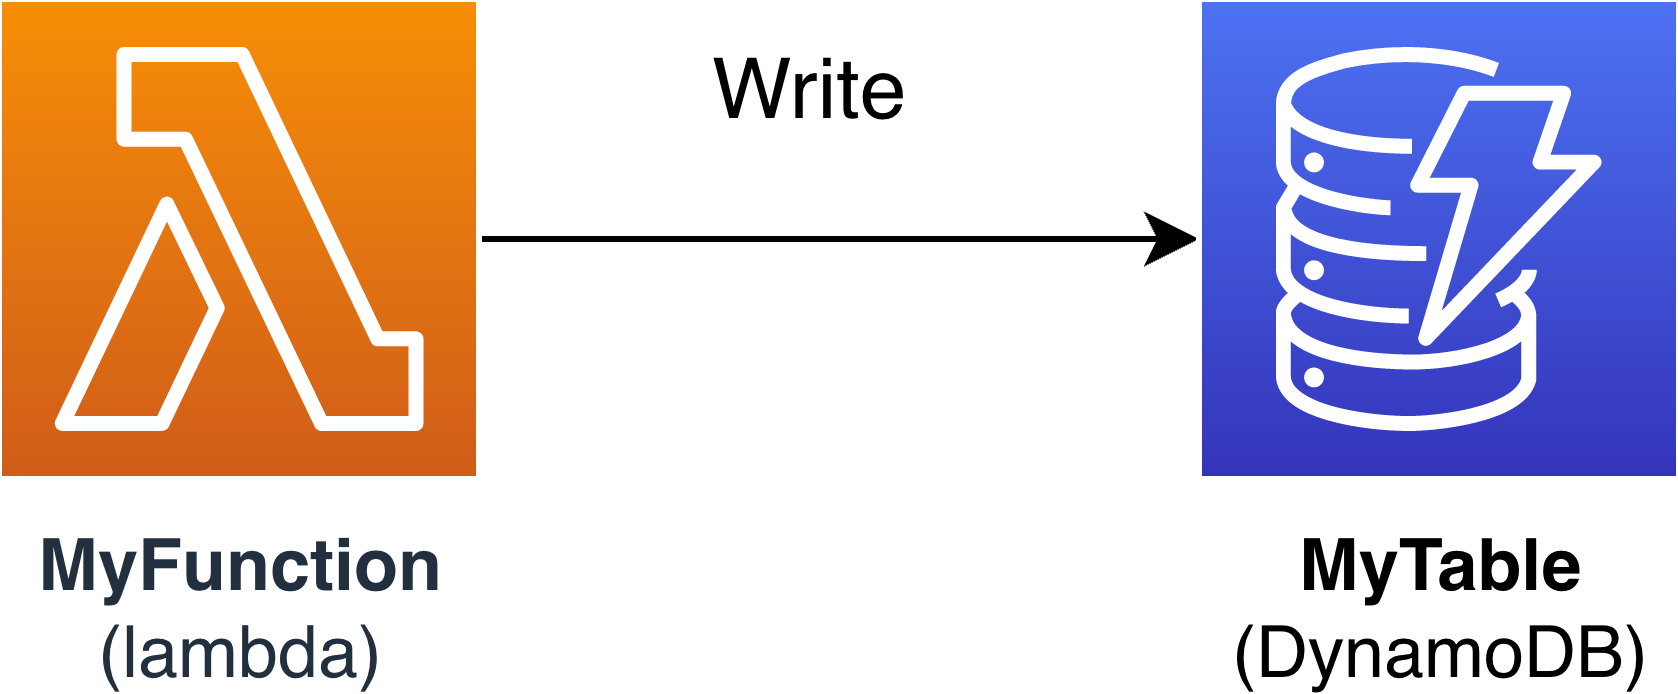 使用連接器將資料寫入 DynamoDB 表格的 Lambda 函數圖表AWS SAM。